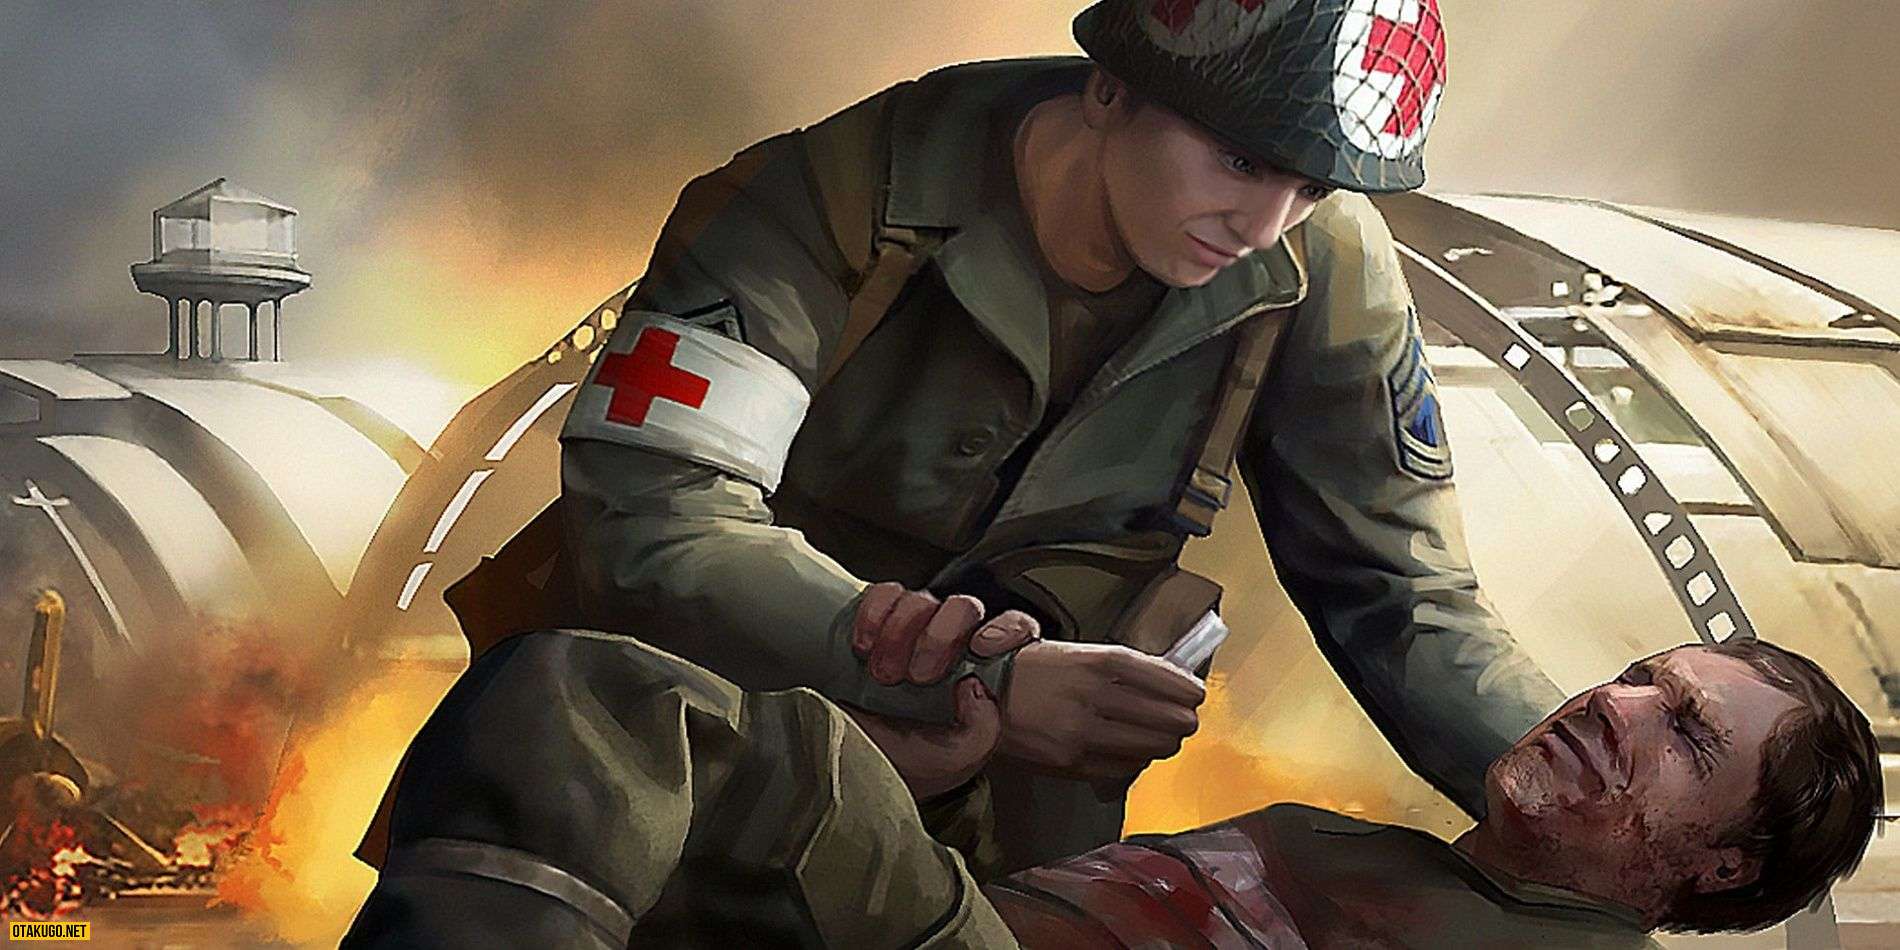 Medic Pacific War se co nguoi choi cuu mang song